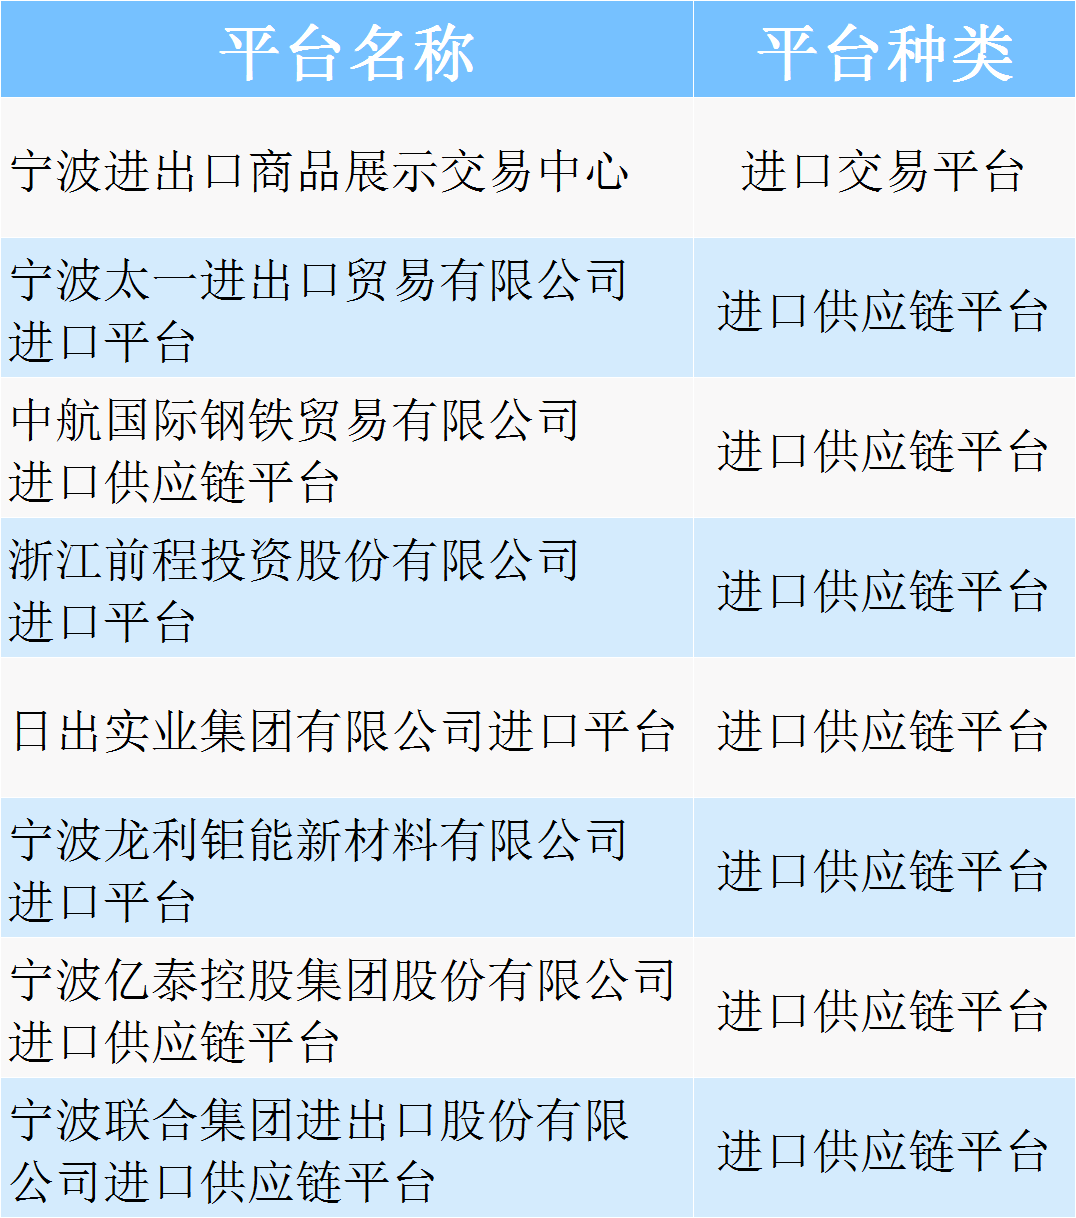 宁波8个平台入选浙江省重点进口平台名单,数量居全省第一!